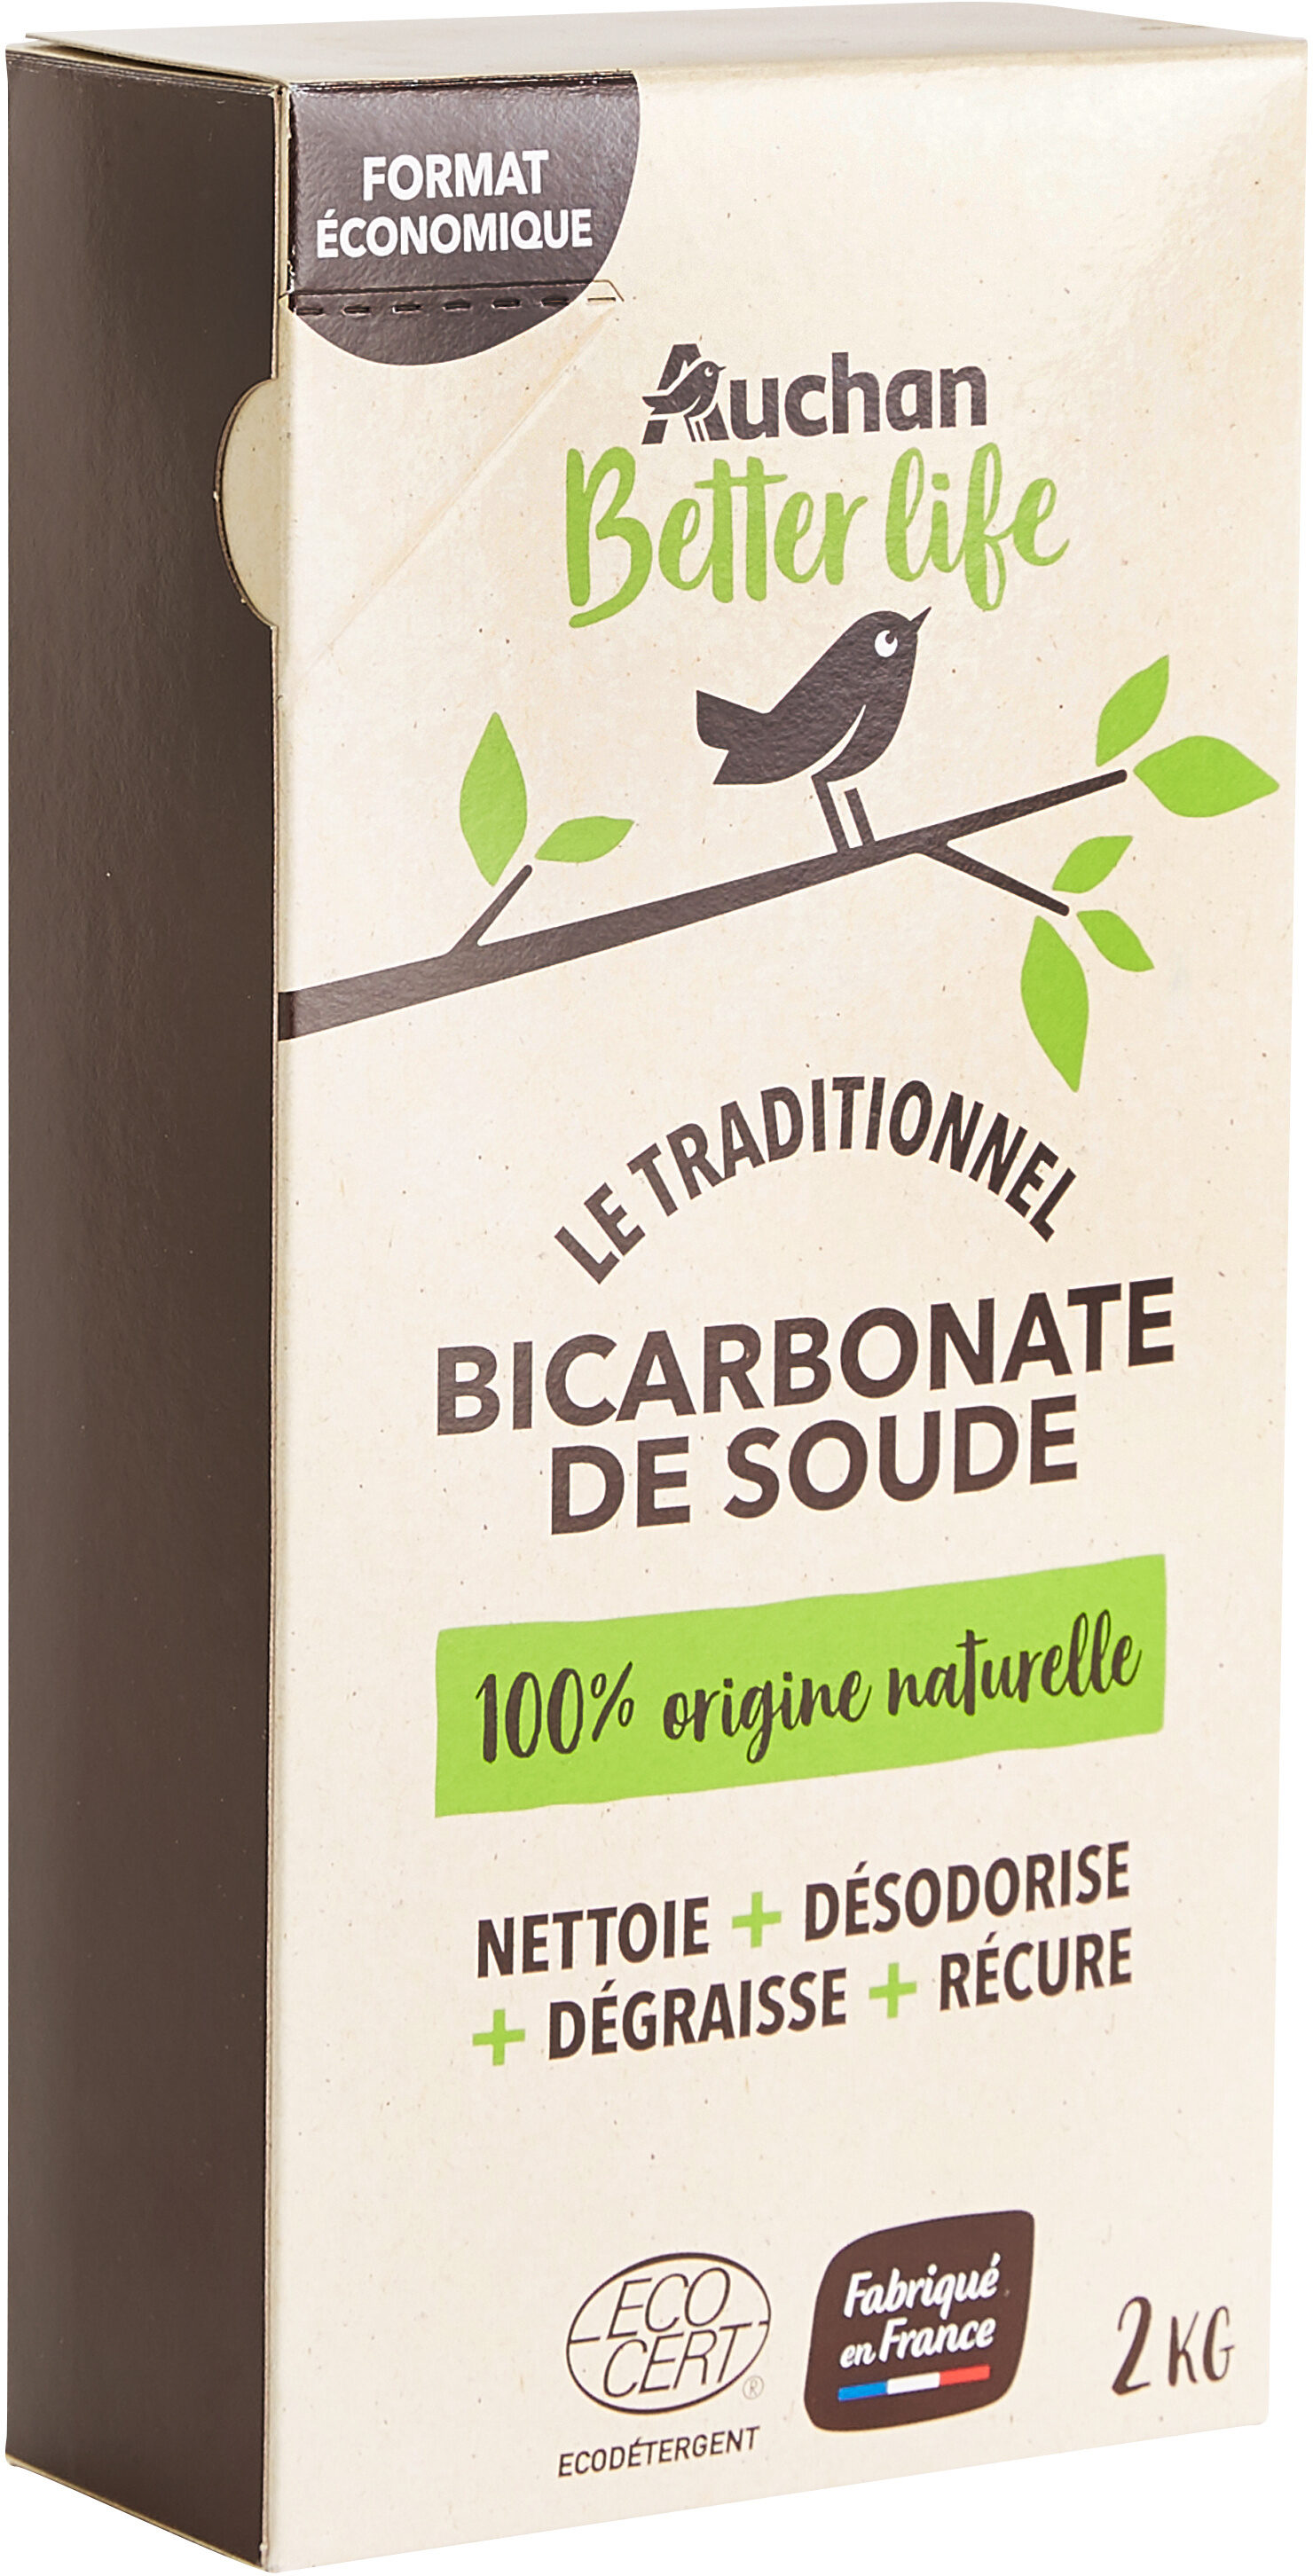 Bicarbonate de soude - Product - fr